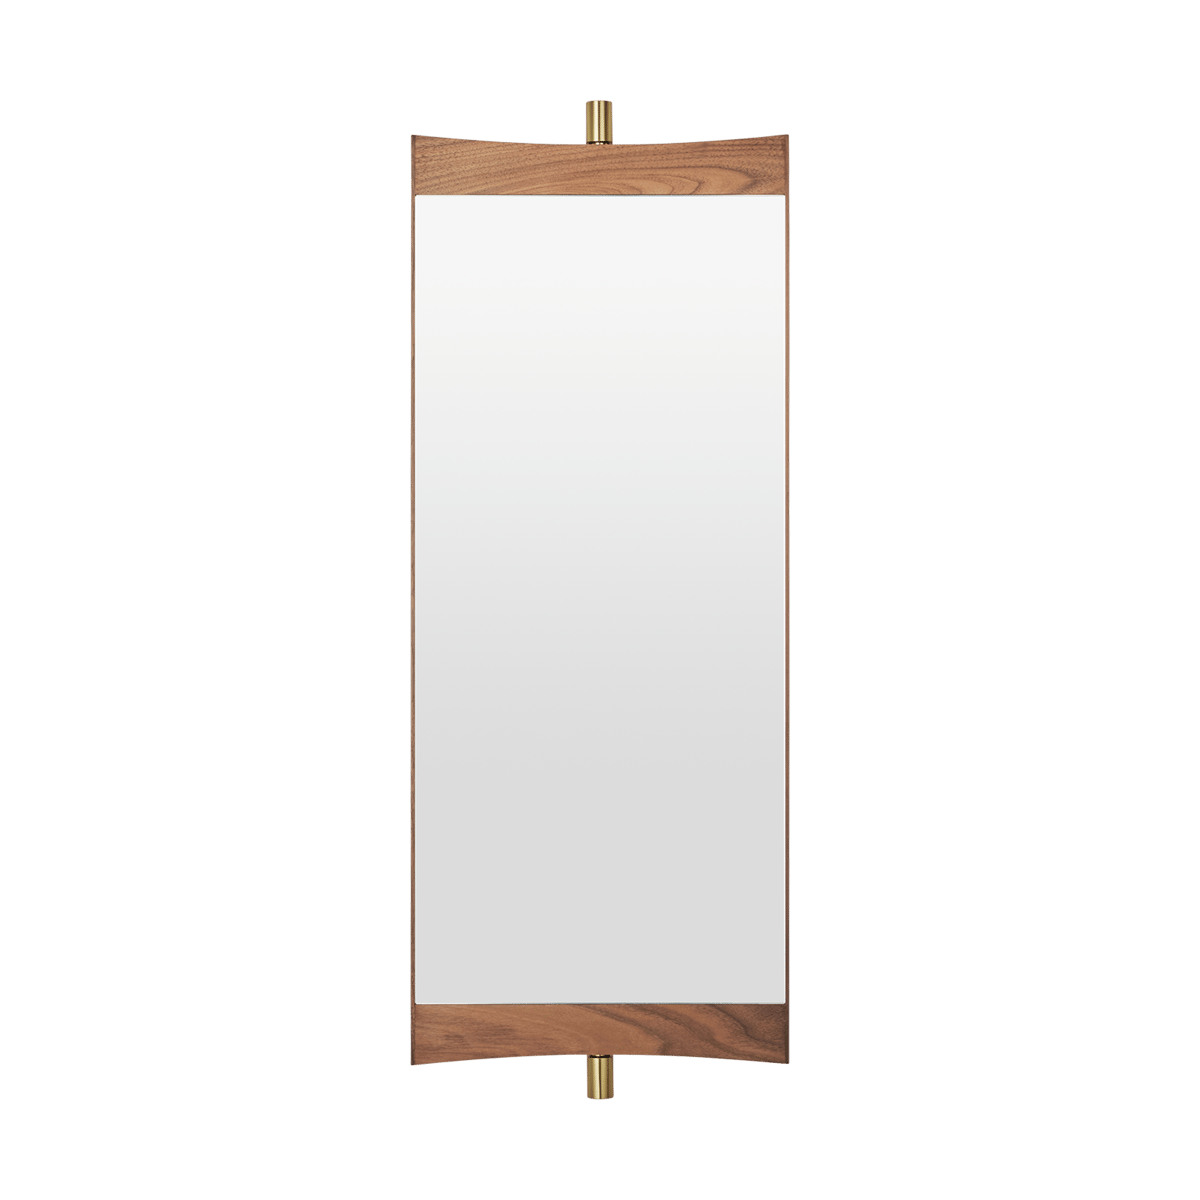 Bilde av Gubi Vanity speil 1 Valnøtt-messing